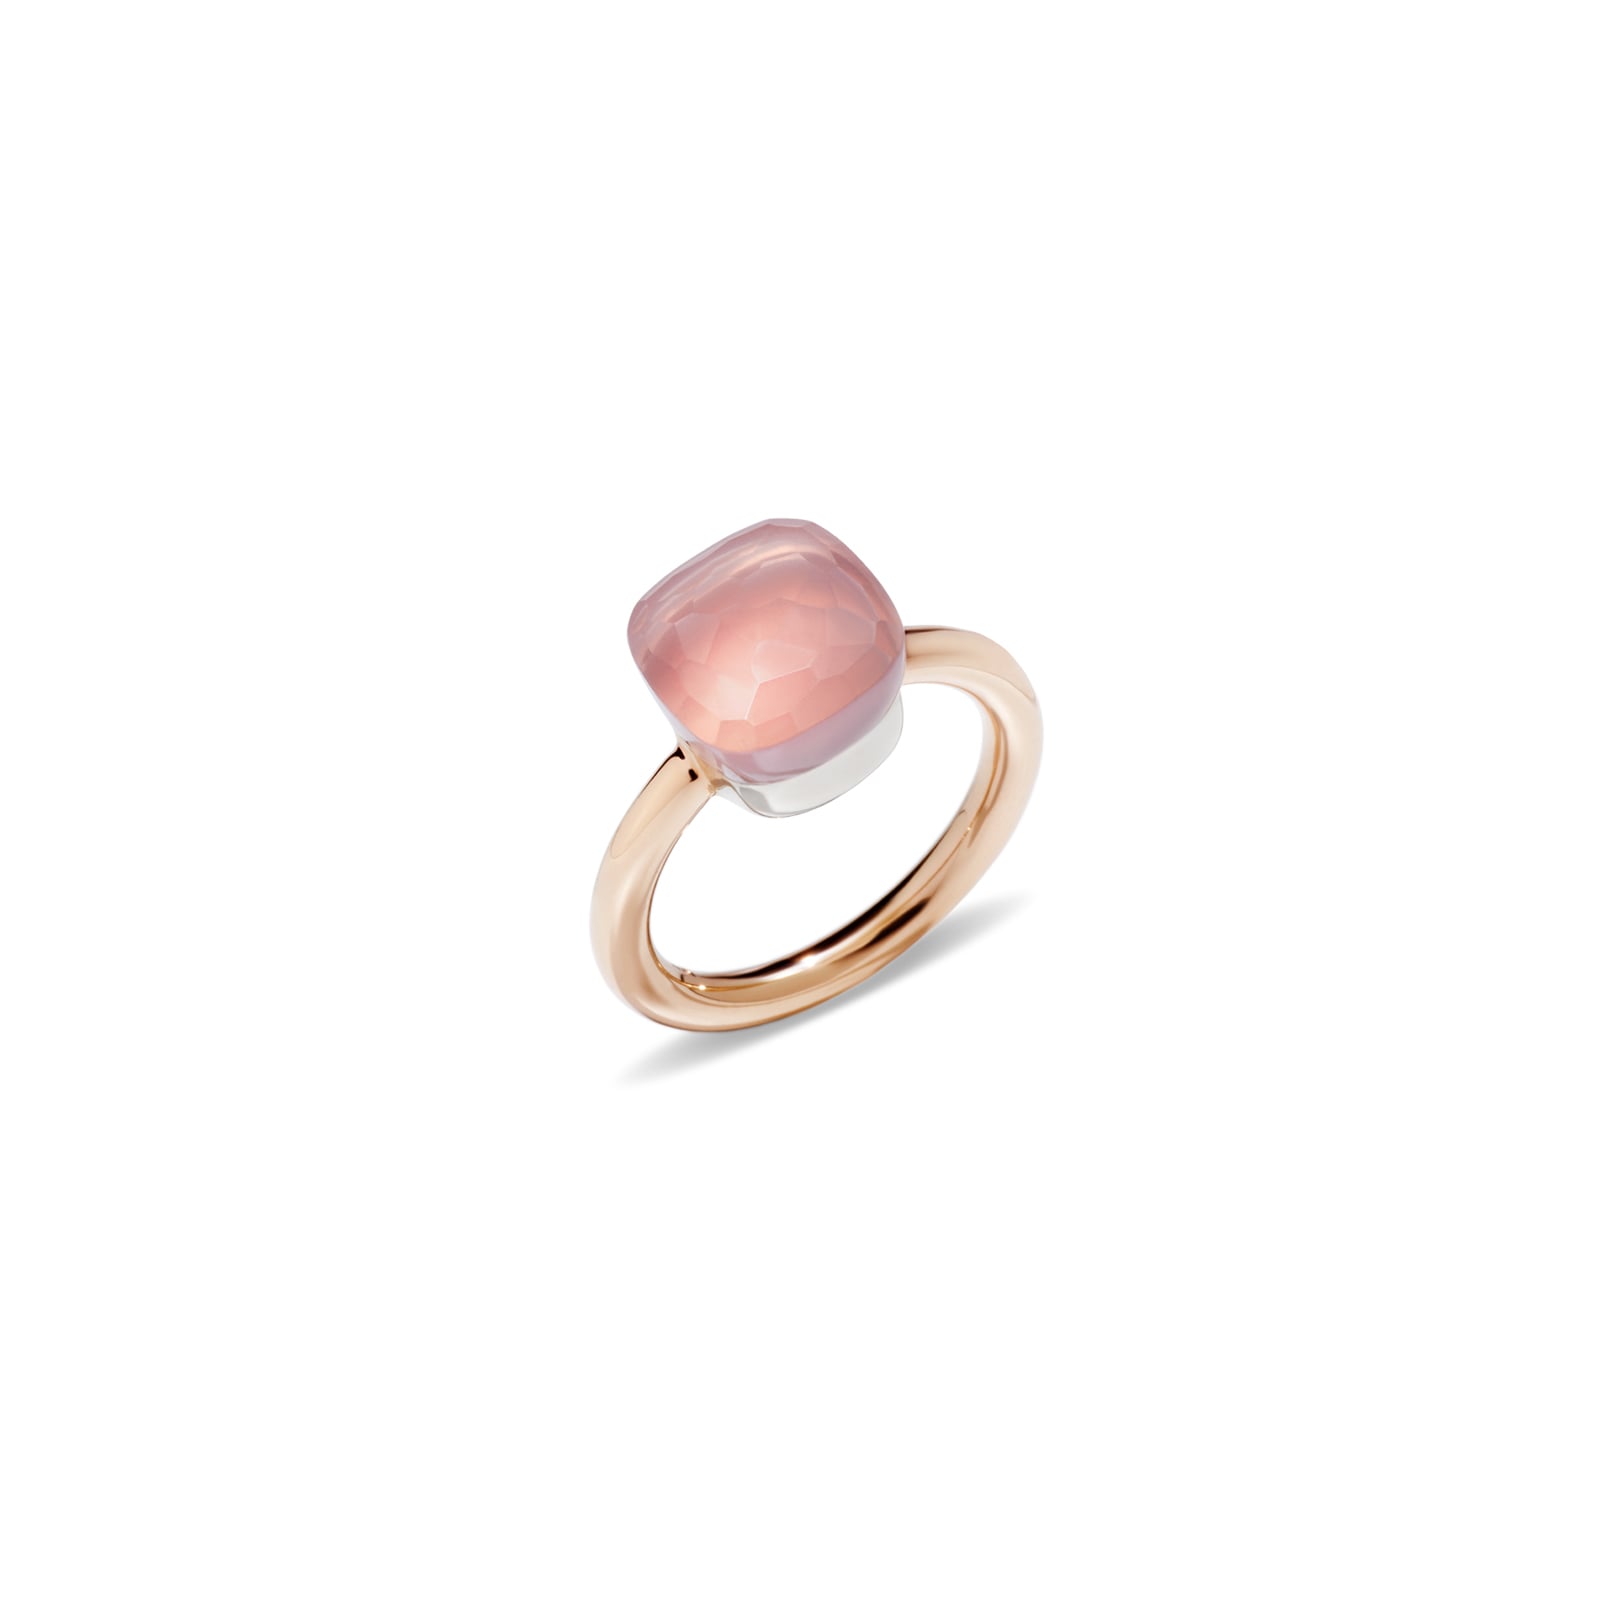 Nudo 18ct Rose & White Gold Rose Quartz Ring - Ring Size N